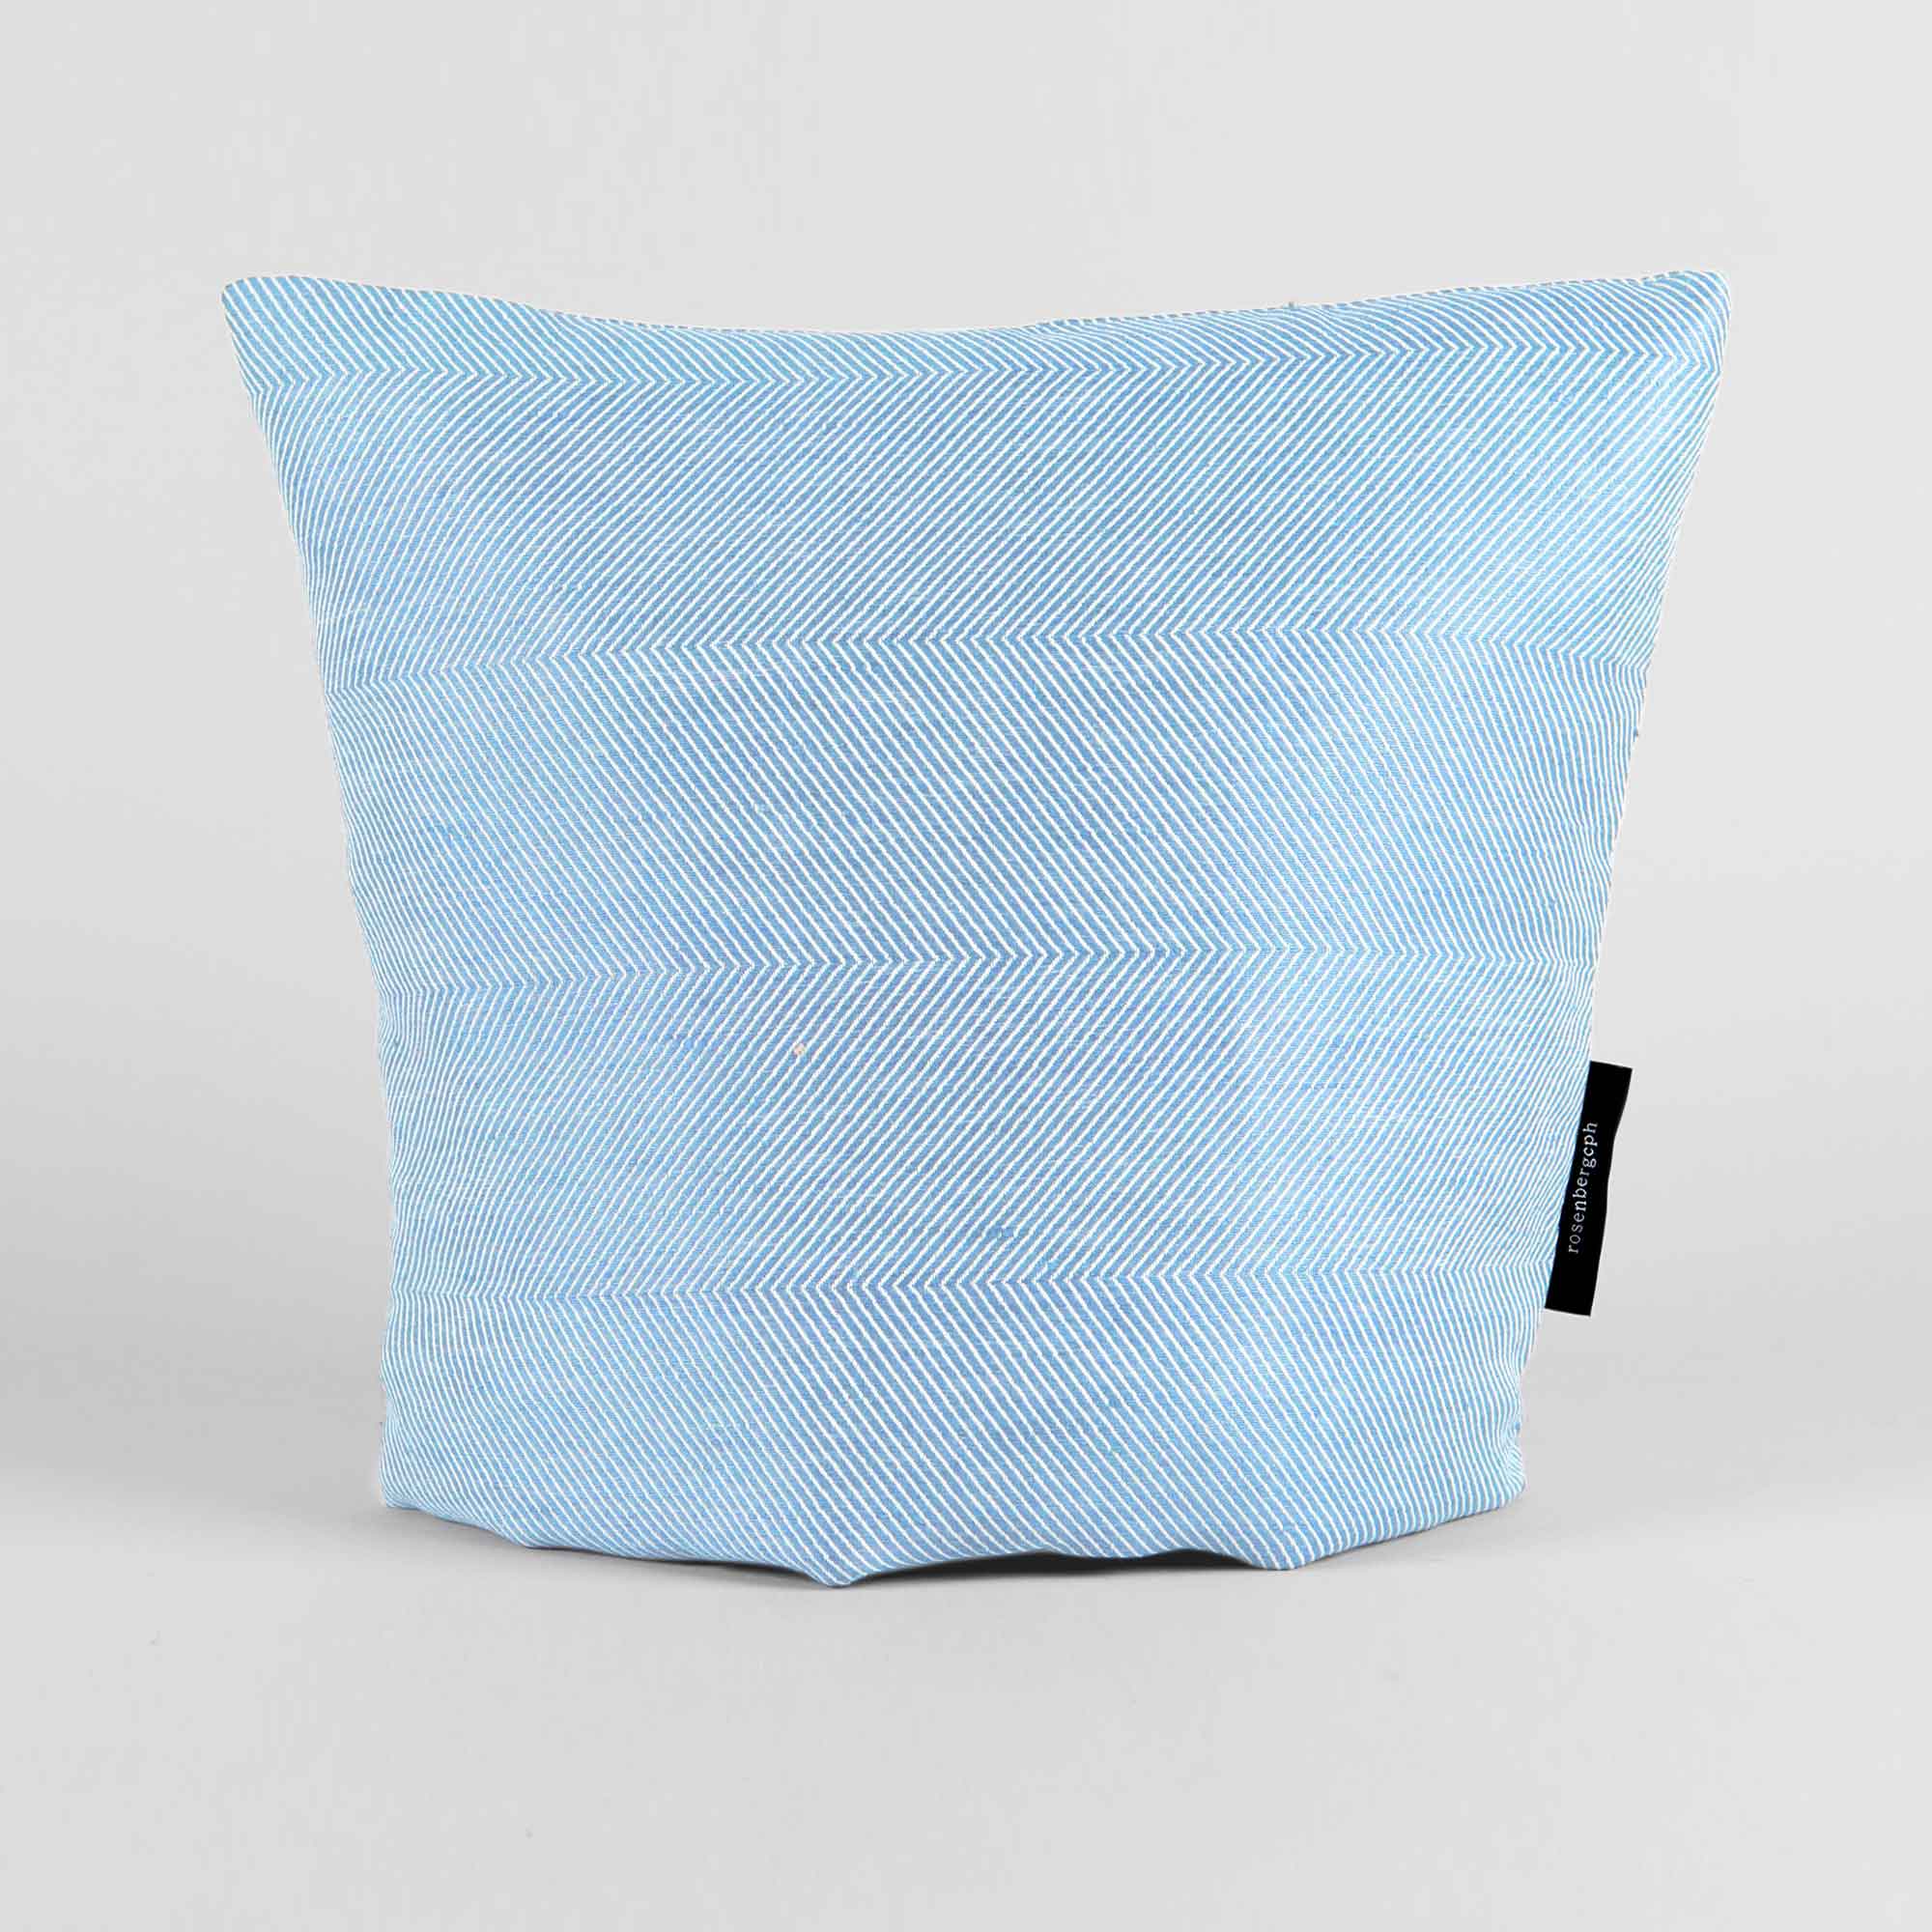 tea cosy, Sky blue, linen/cotton, design by Anne Rosenberg, RosenbergCph